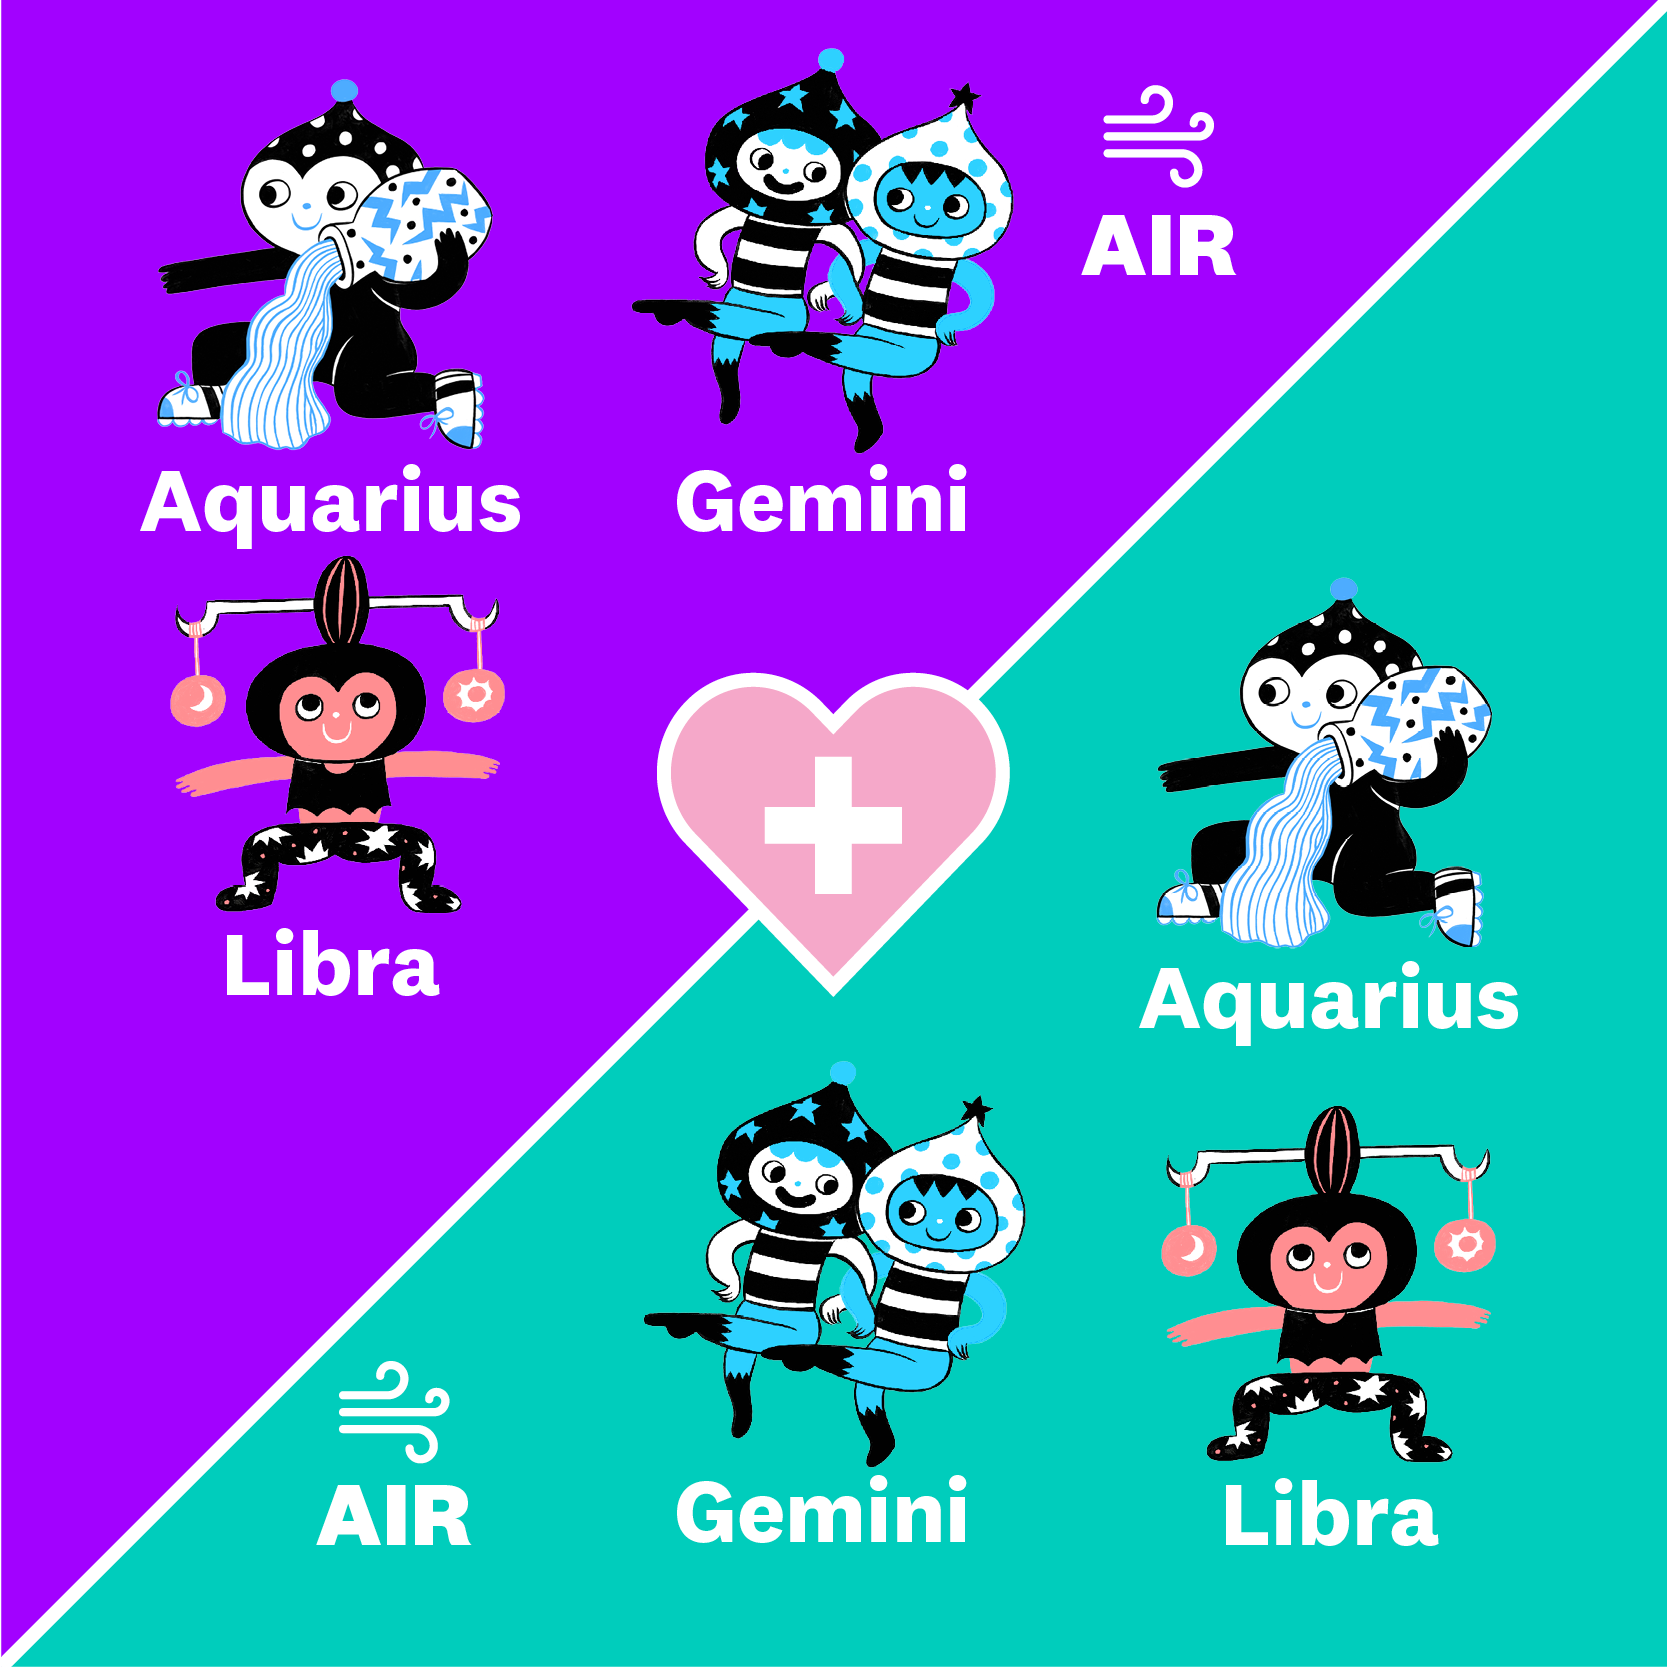 zodiac signs compatibility